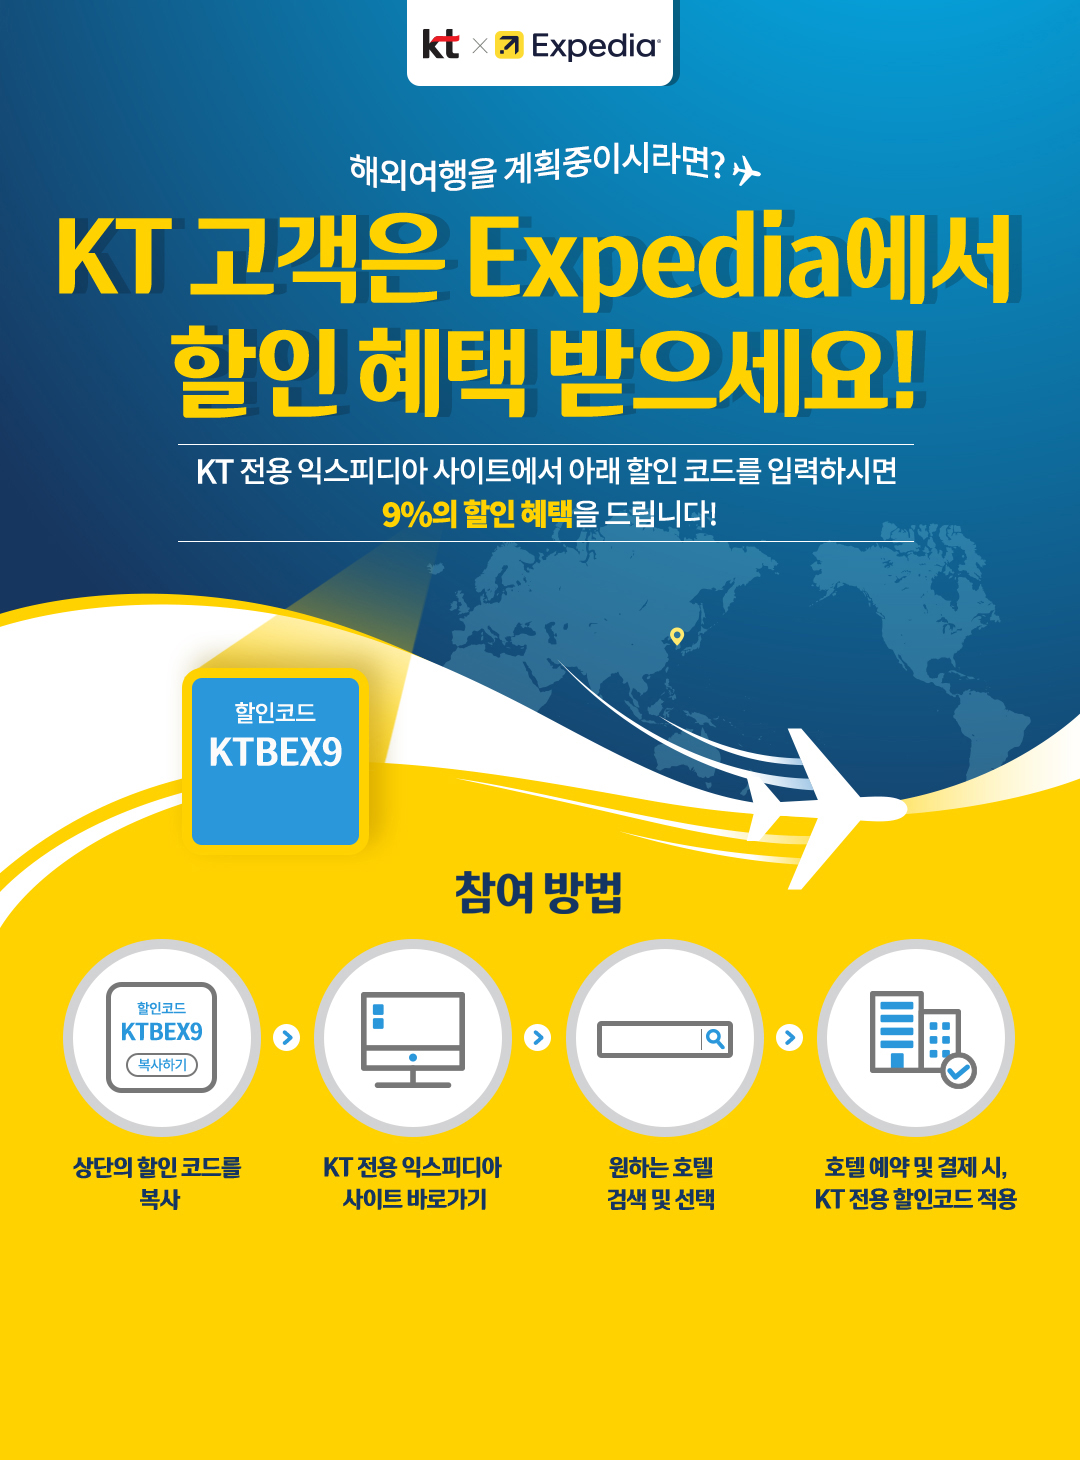 kt X Expedia™ 해외 여행을 계획중이시라면? KT 고객은 Expedia에서 할인 혜택 받으세요! KT 전용 익스피디아 사이트에서 아래 할인 코드를 입력하시면 9%의 할인 혜택을 드립니다! 할인코드 KTBEX9. 참여 방법 : 상단의 할인 코드를 복사 → KT 전용 익스피디아 사이트 바로가기 → 원하는 호텔 검색 및 선택 → 호텔 예약 및 결제 시, KT 전용 할인코드 적용